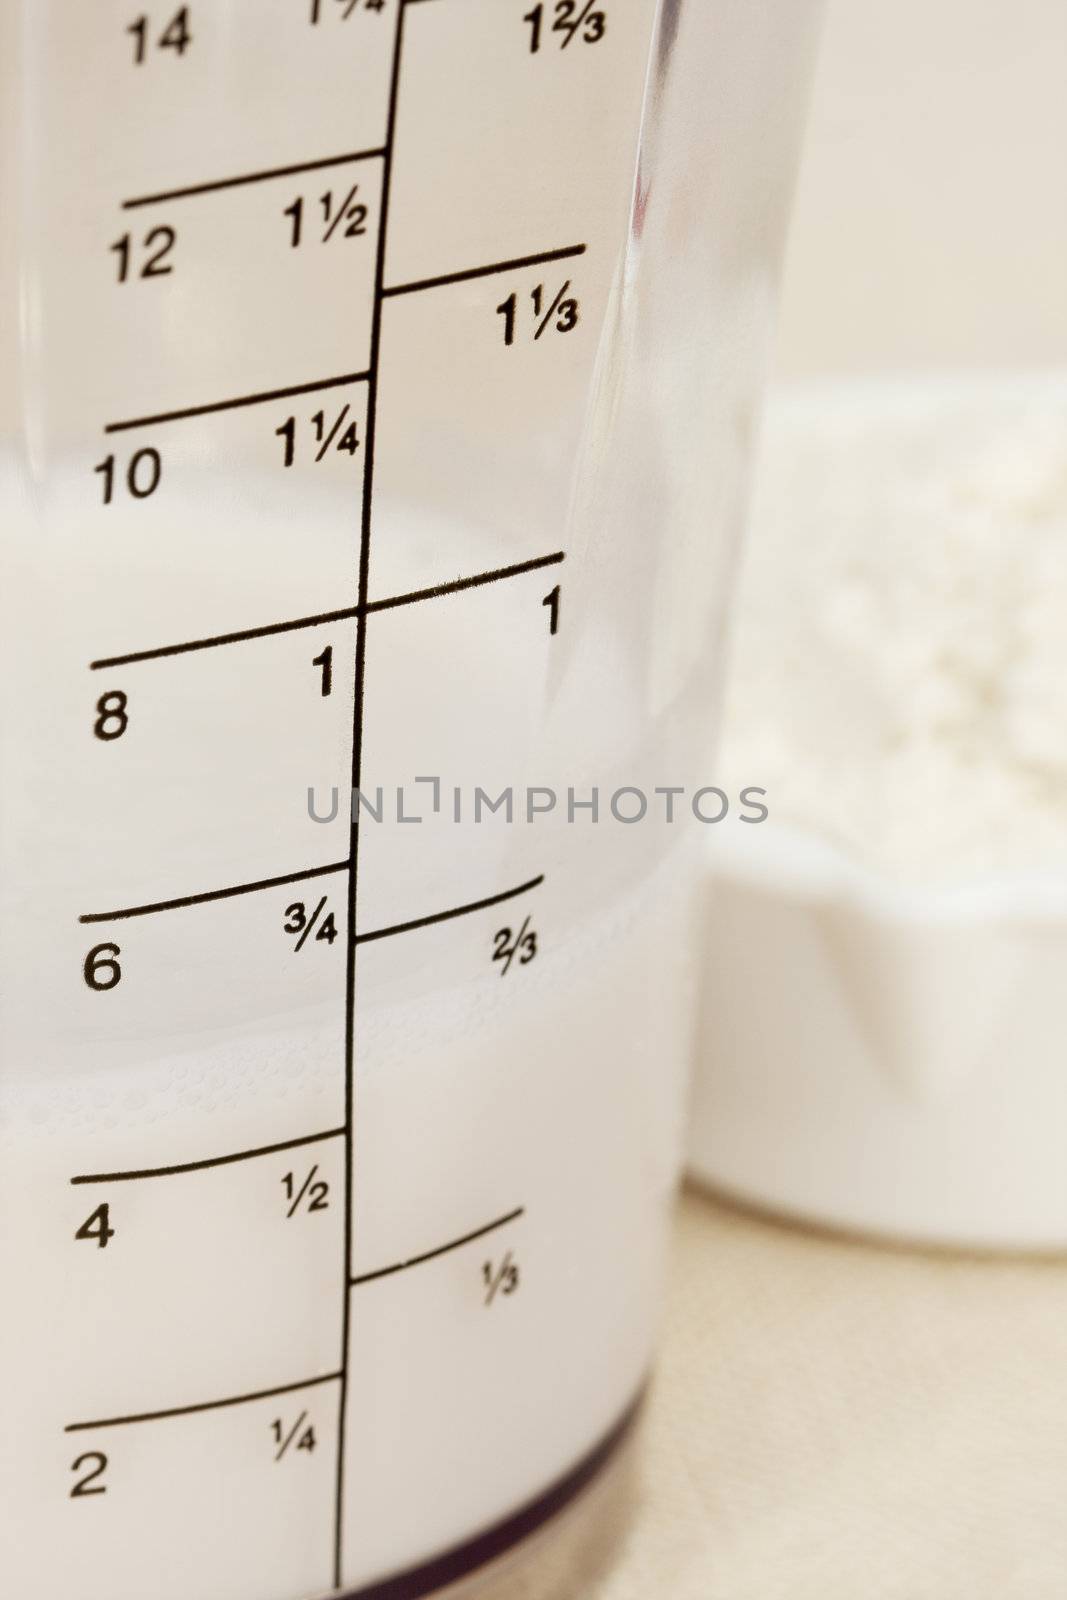 almond milk in blender beaker by PixelsAway